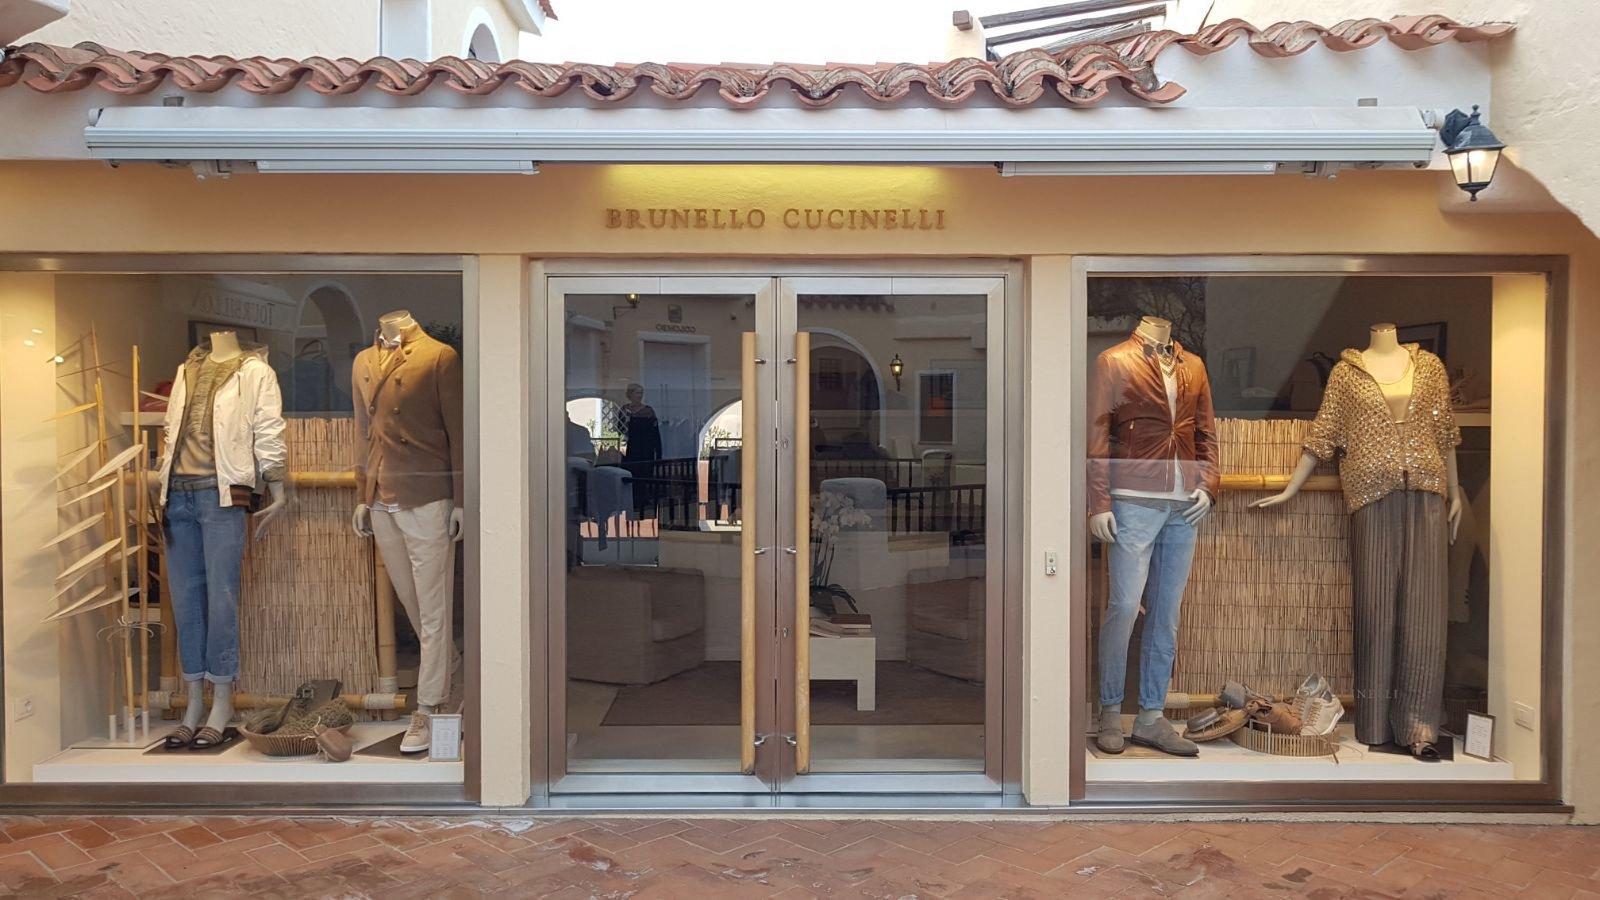 BRUNELLO CUCINELLI - Brunello Cucinelli S.p.A. Trademark Registration